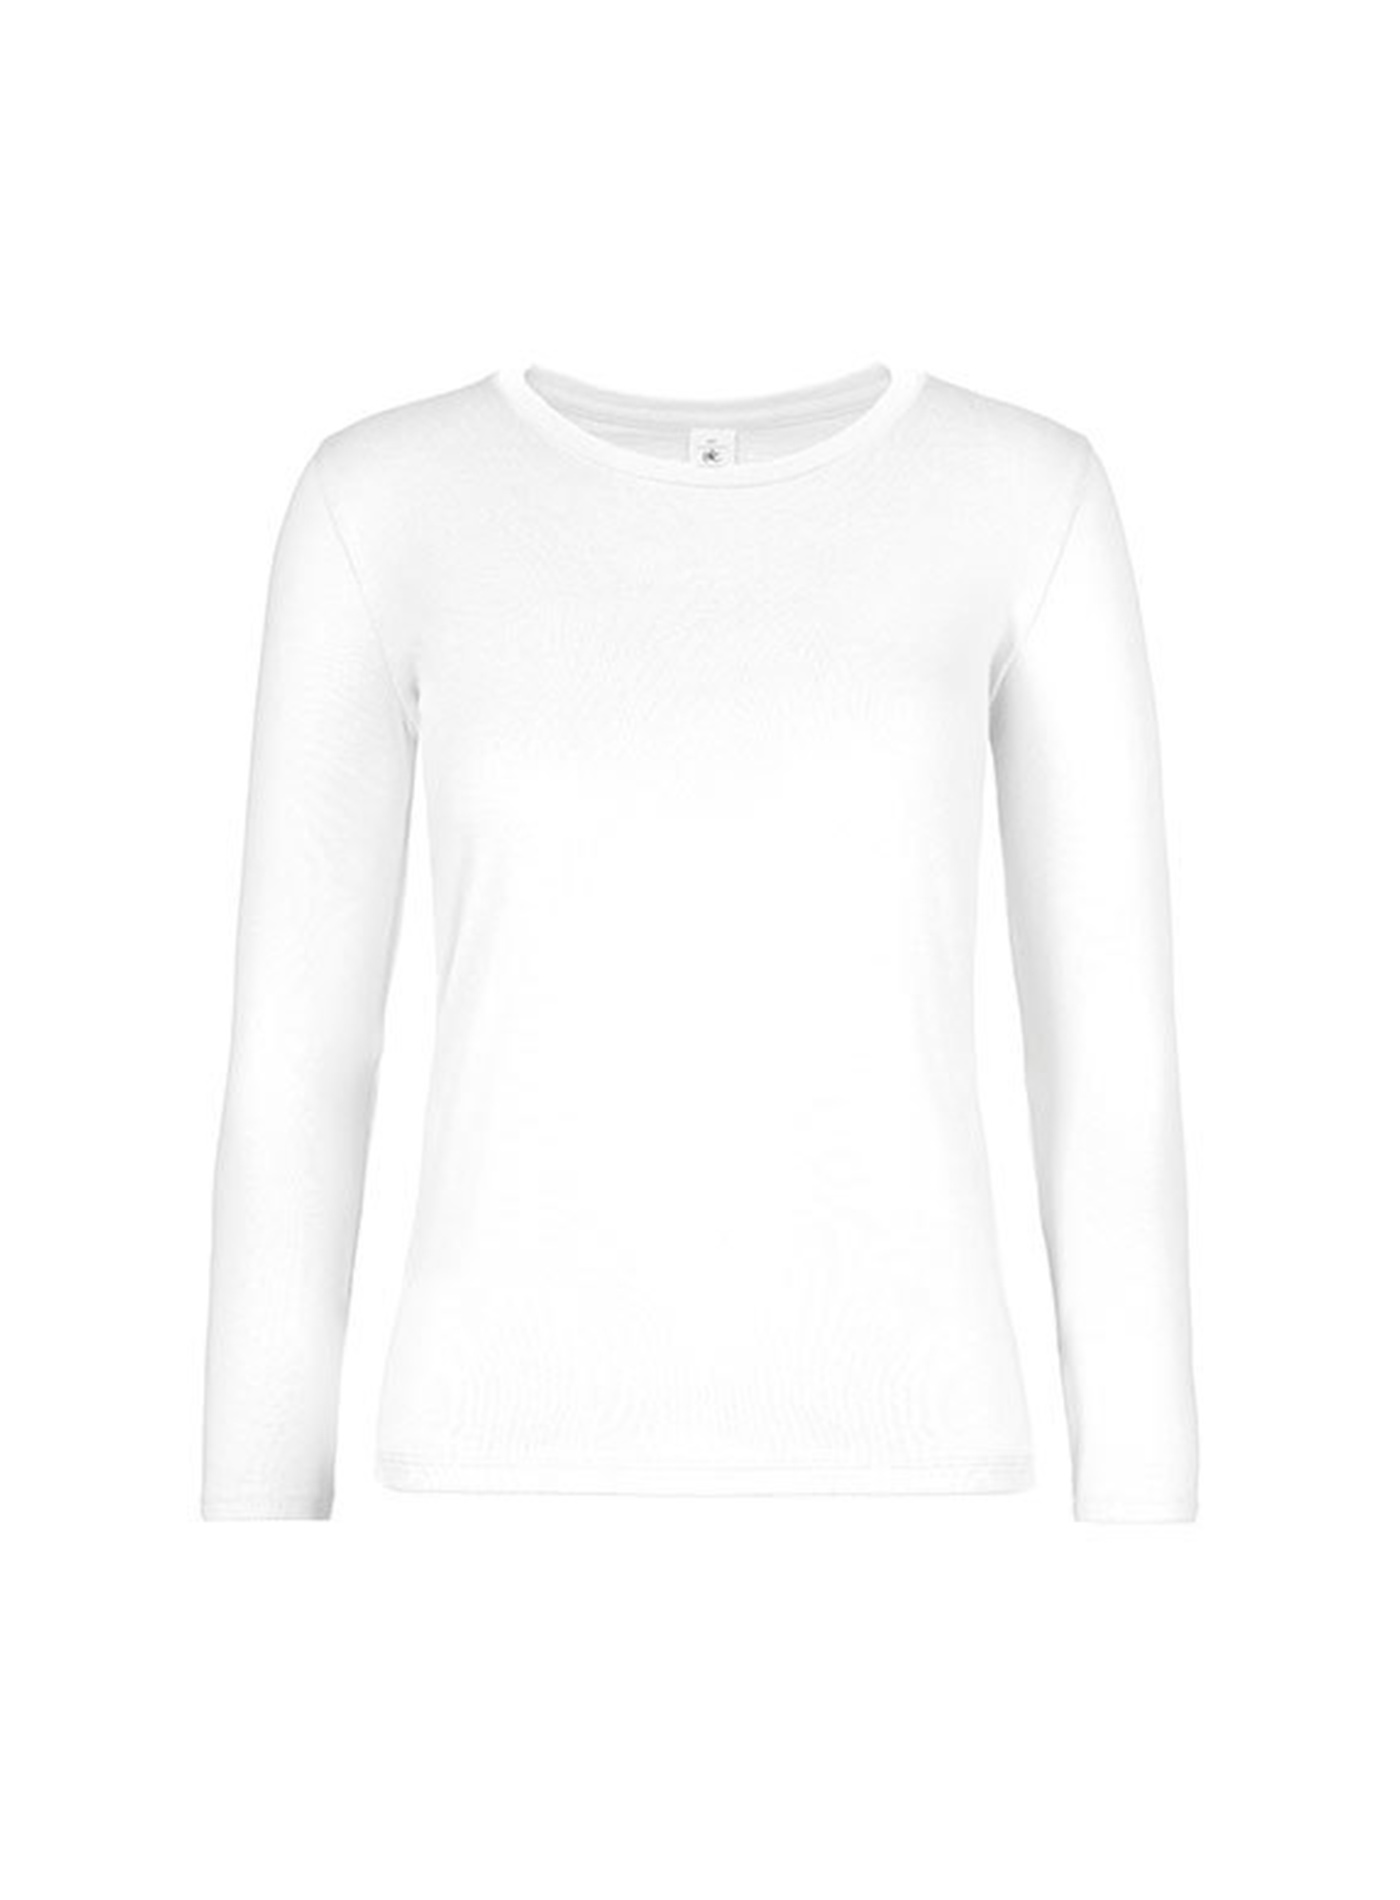 Dámské tričko s dlouhým rukávem B&C Collection - Bílá S